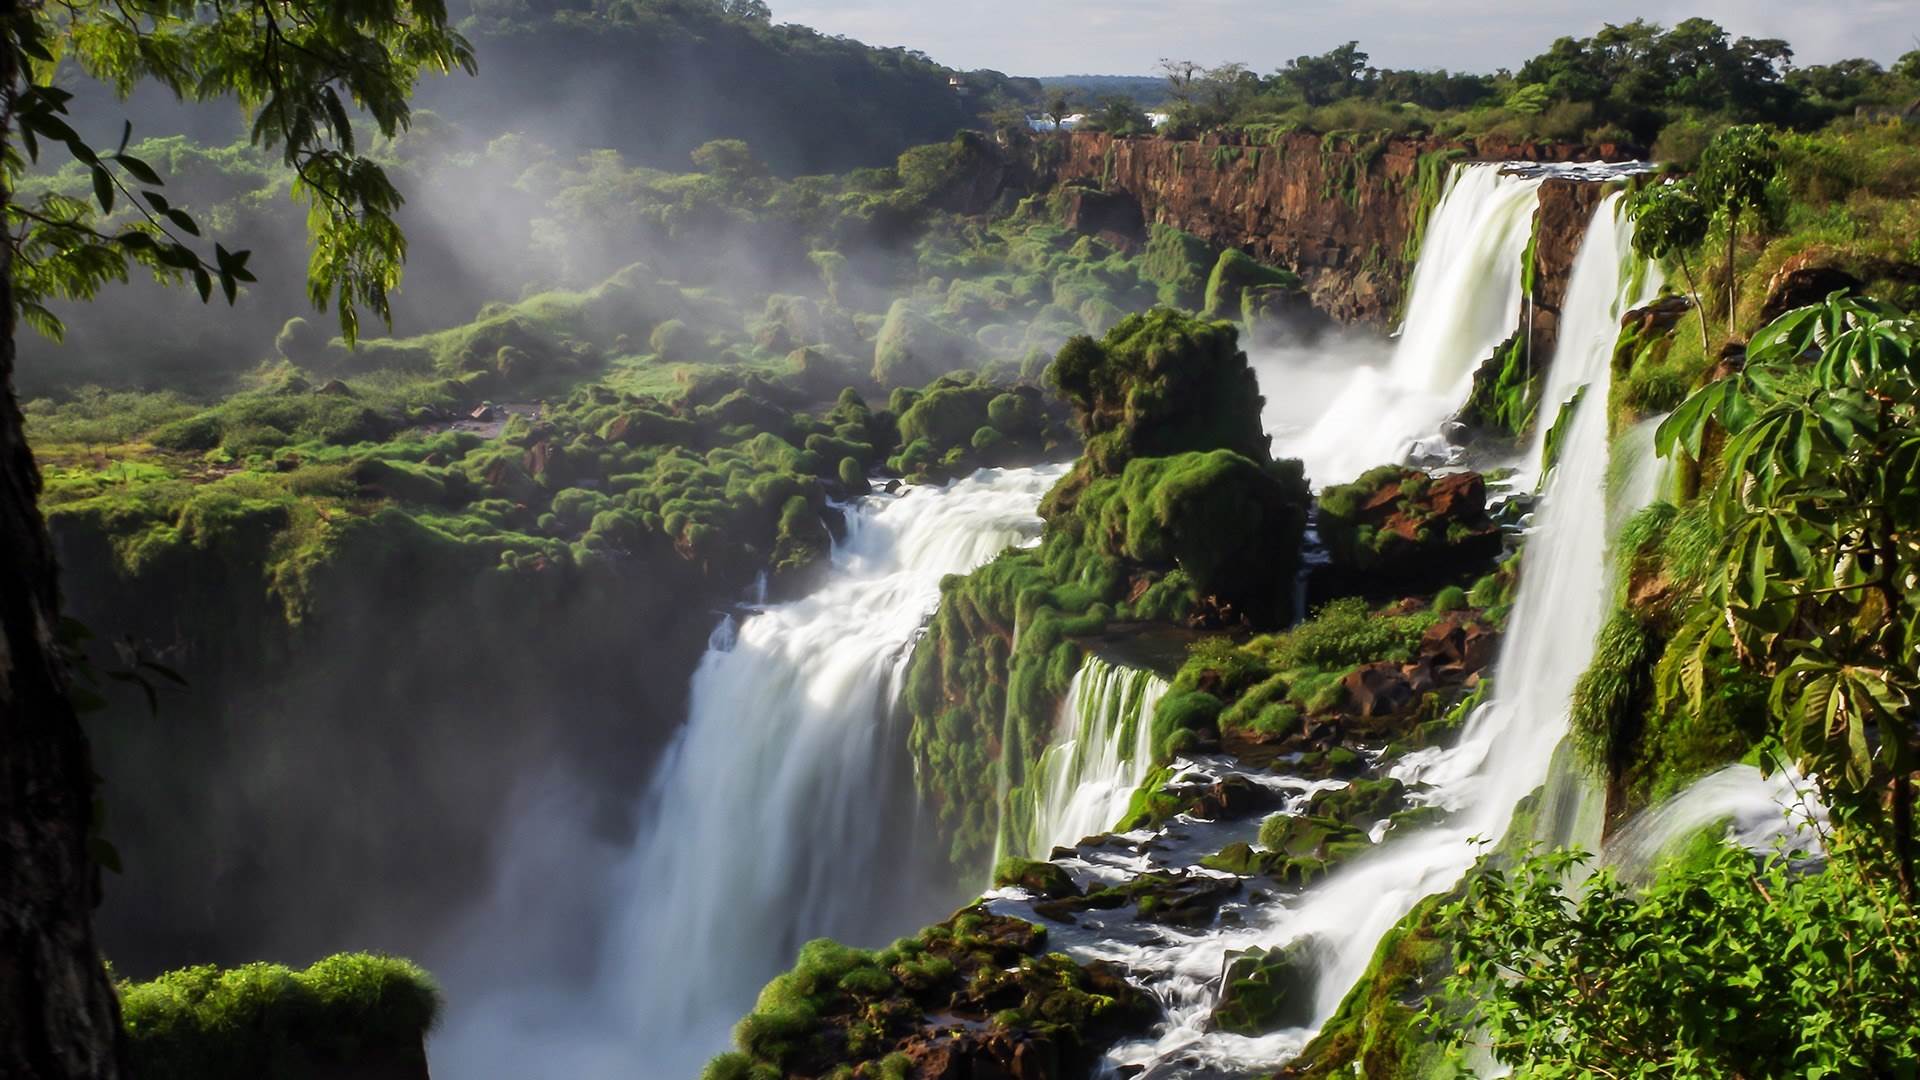 巴西和阿根廷边境上的伊瓜苏瀑布